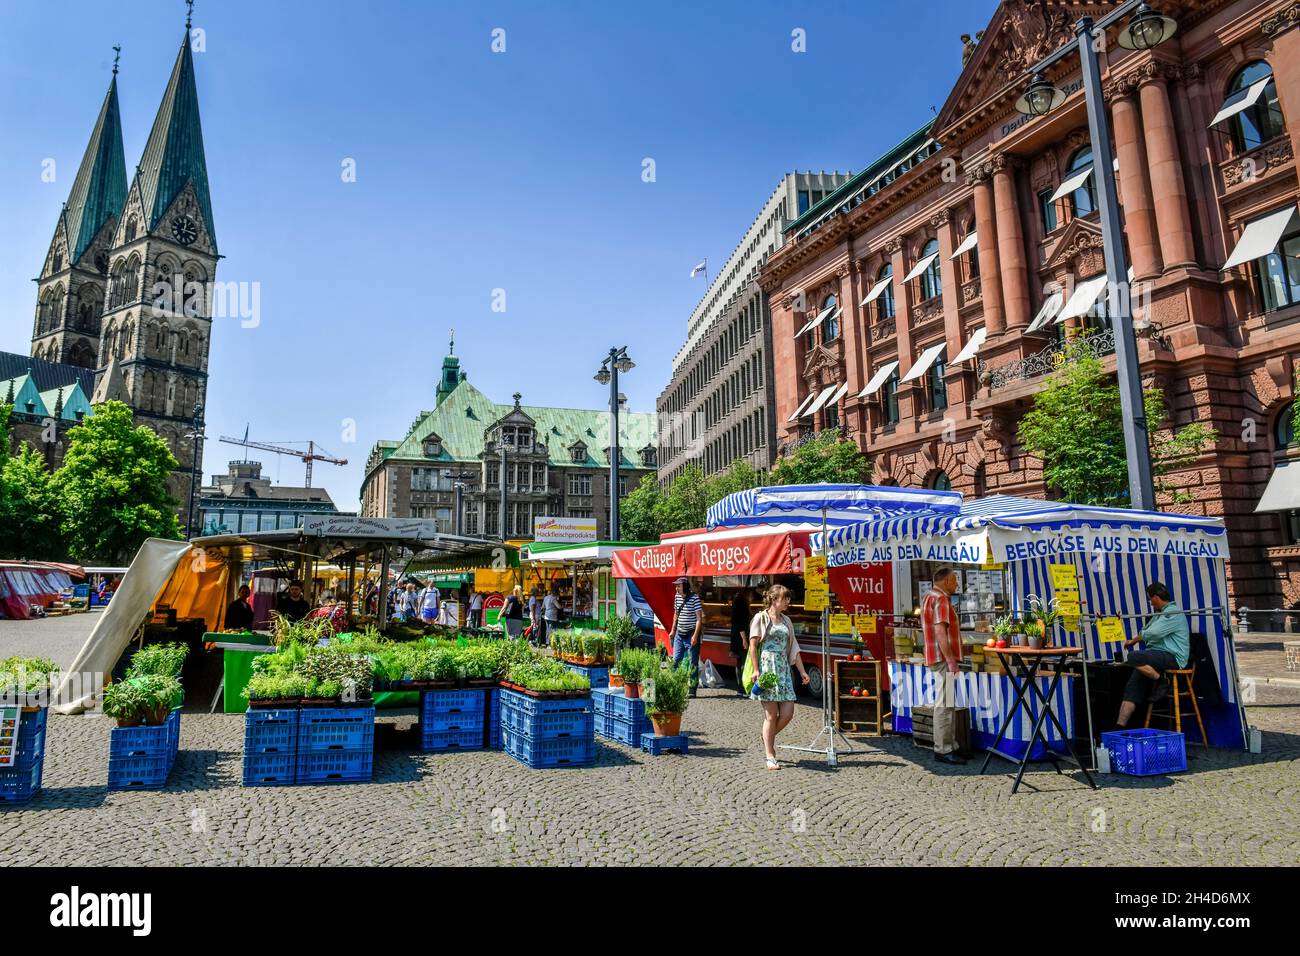 Wochenmarkt, Domshof, Bremen, Deutschland Stock Photo